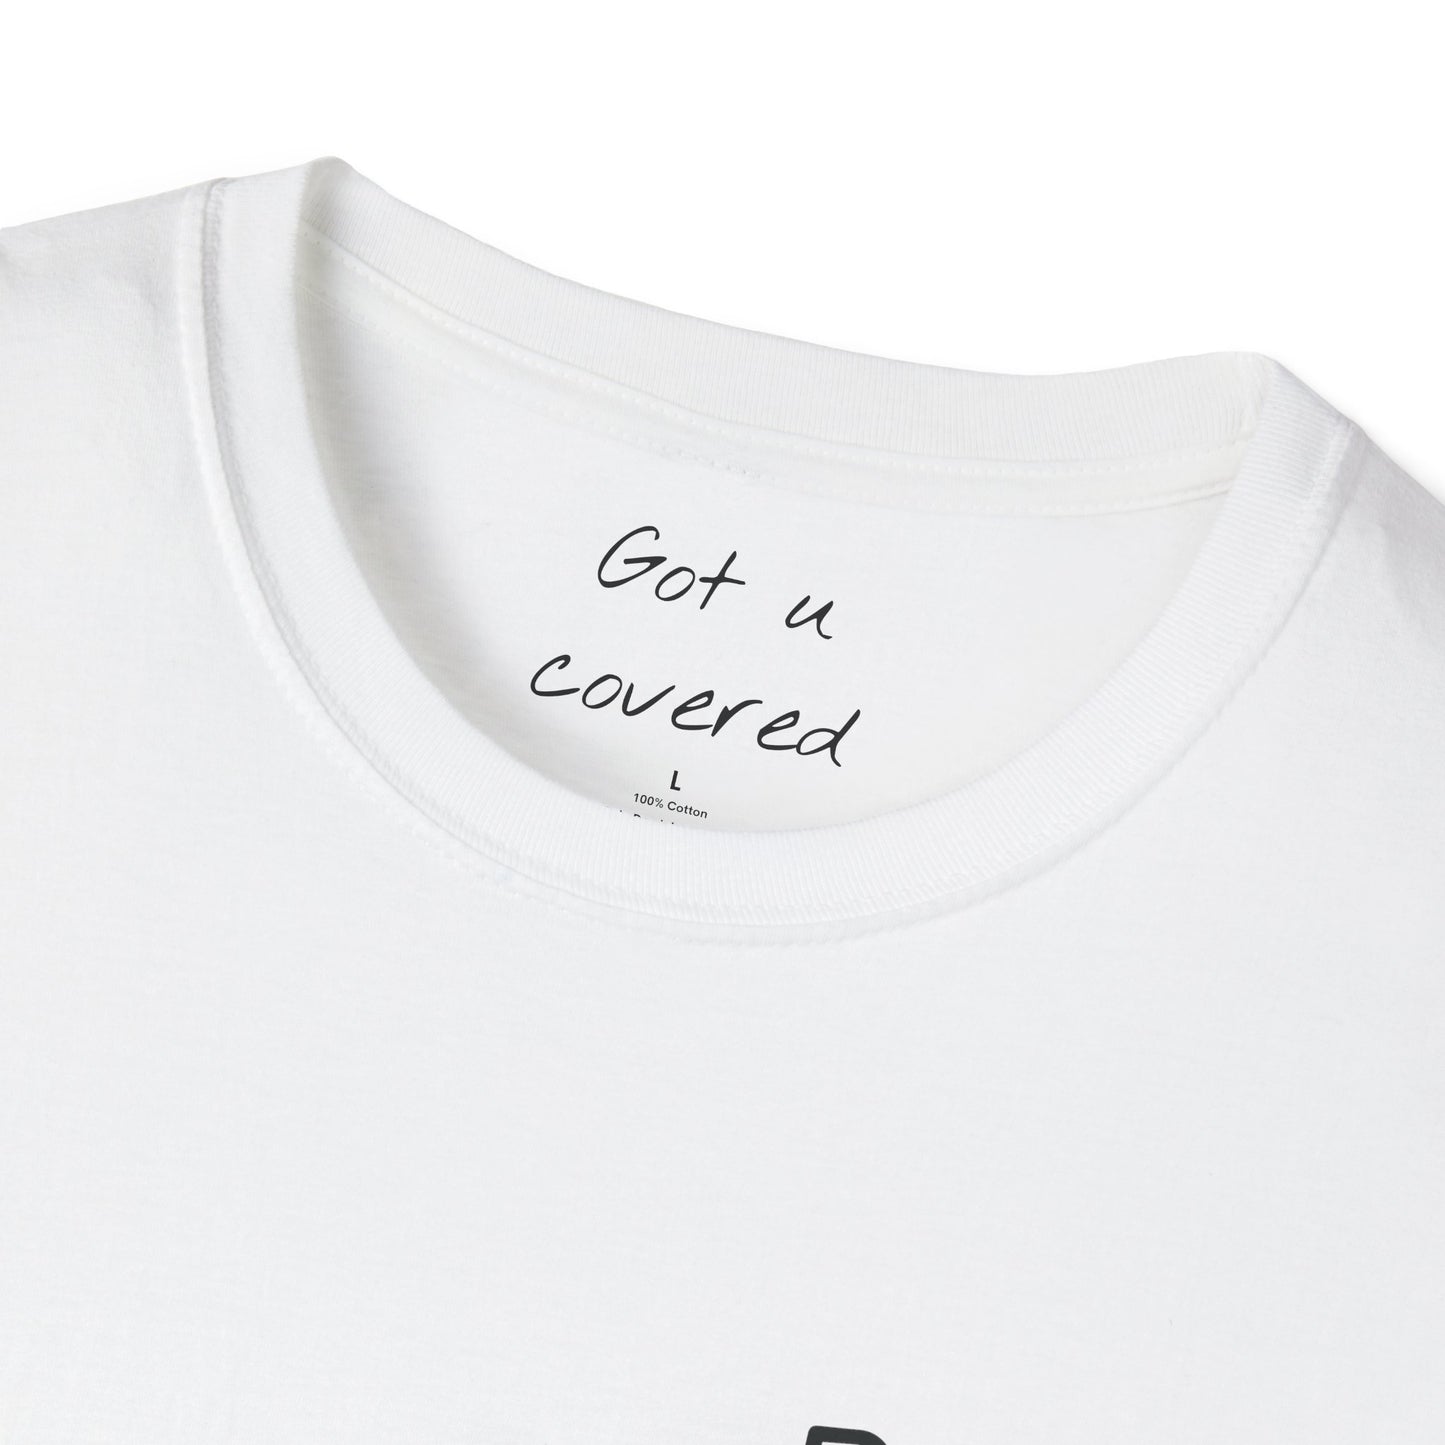 Yes I'm Fine T-Shirt | Edgy Skull Design | Backbeat Wear